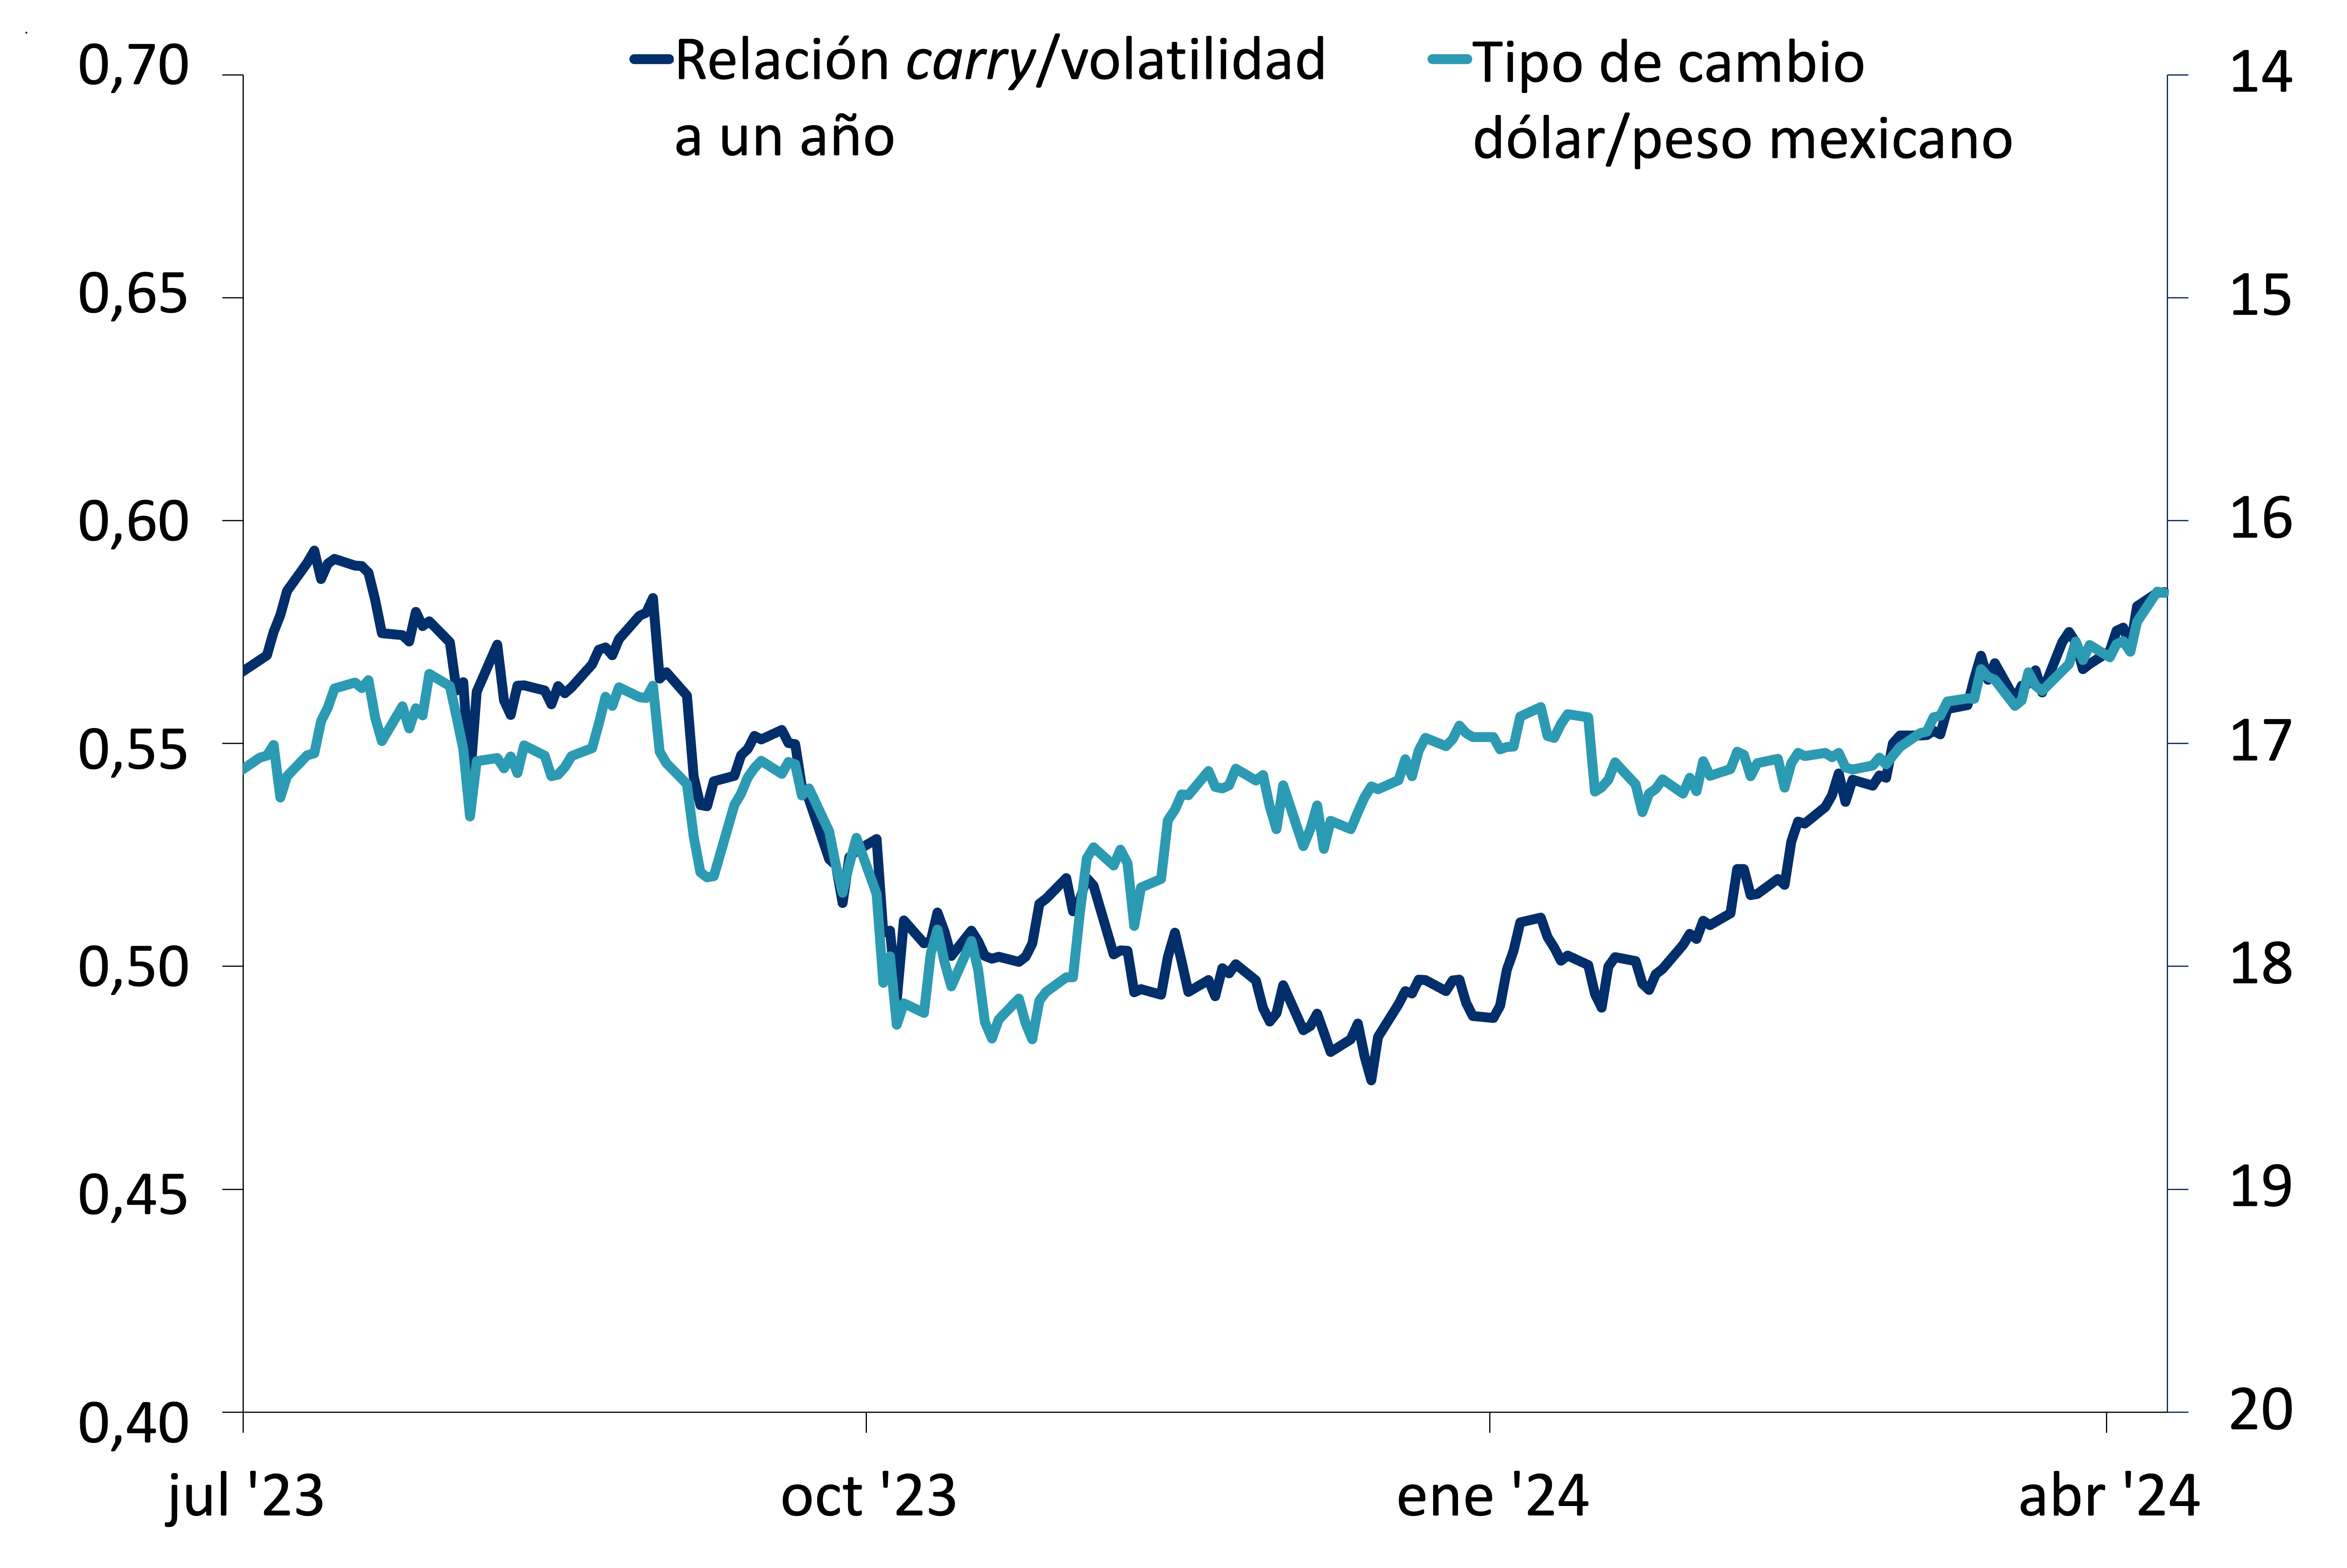 Este gráfico muestra el tipo de cambio dólar/peso mexicano frente a la relación carry/volatilidad a un año, entre julio de 2023 y abril de 2024.